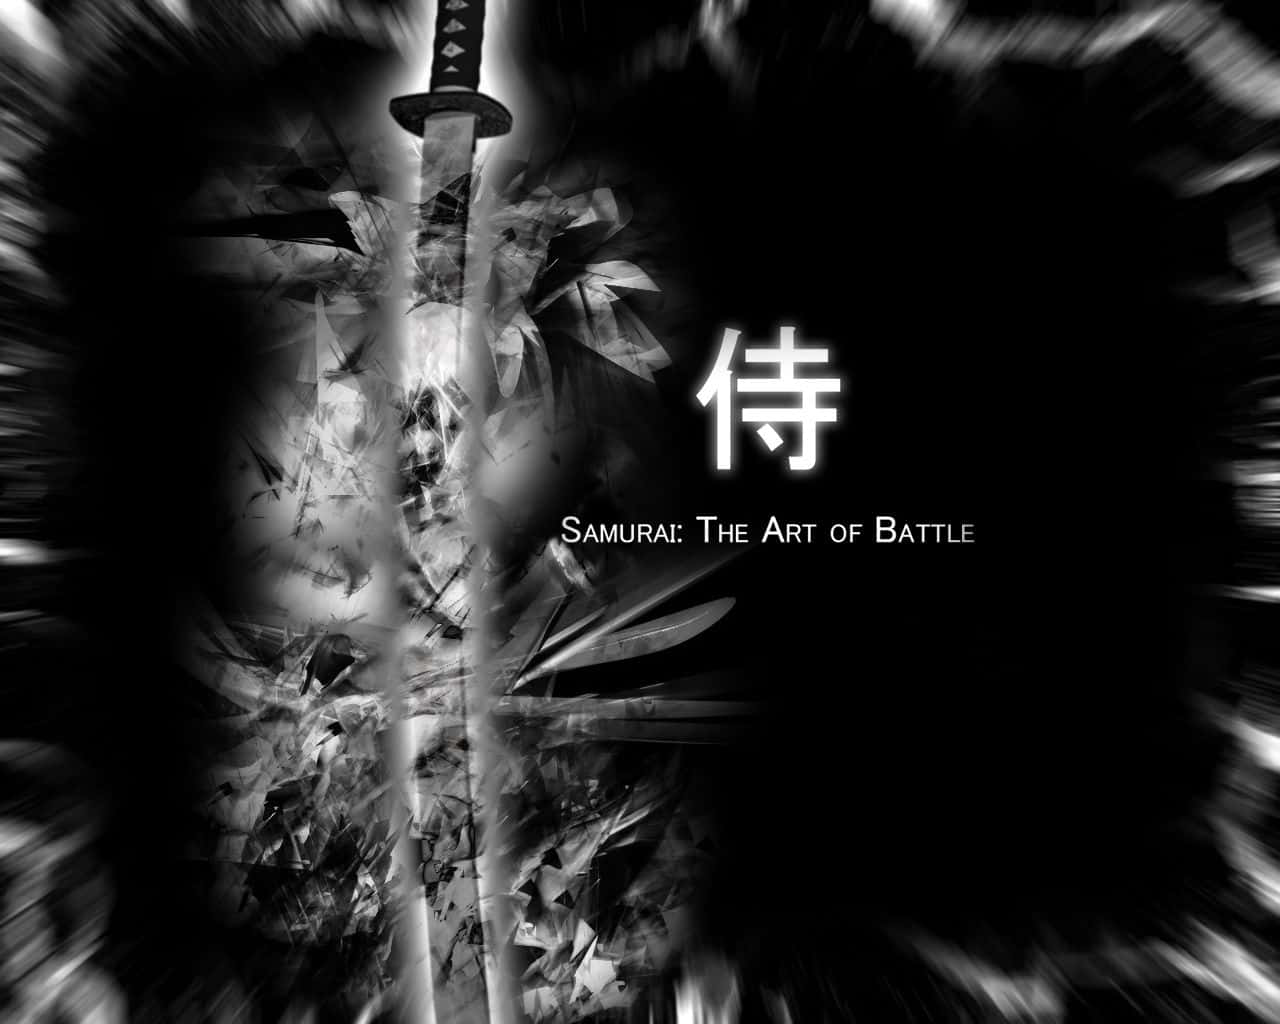 Samurainegro Y Blanco En Acción. Fondo de pantalla